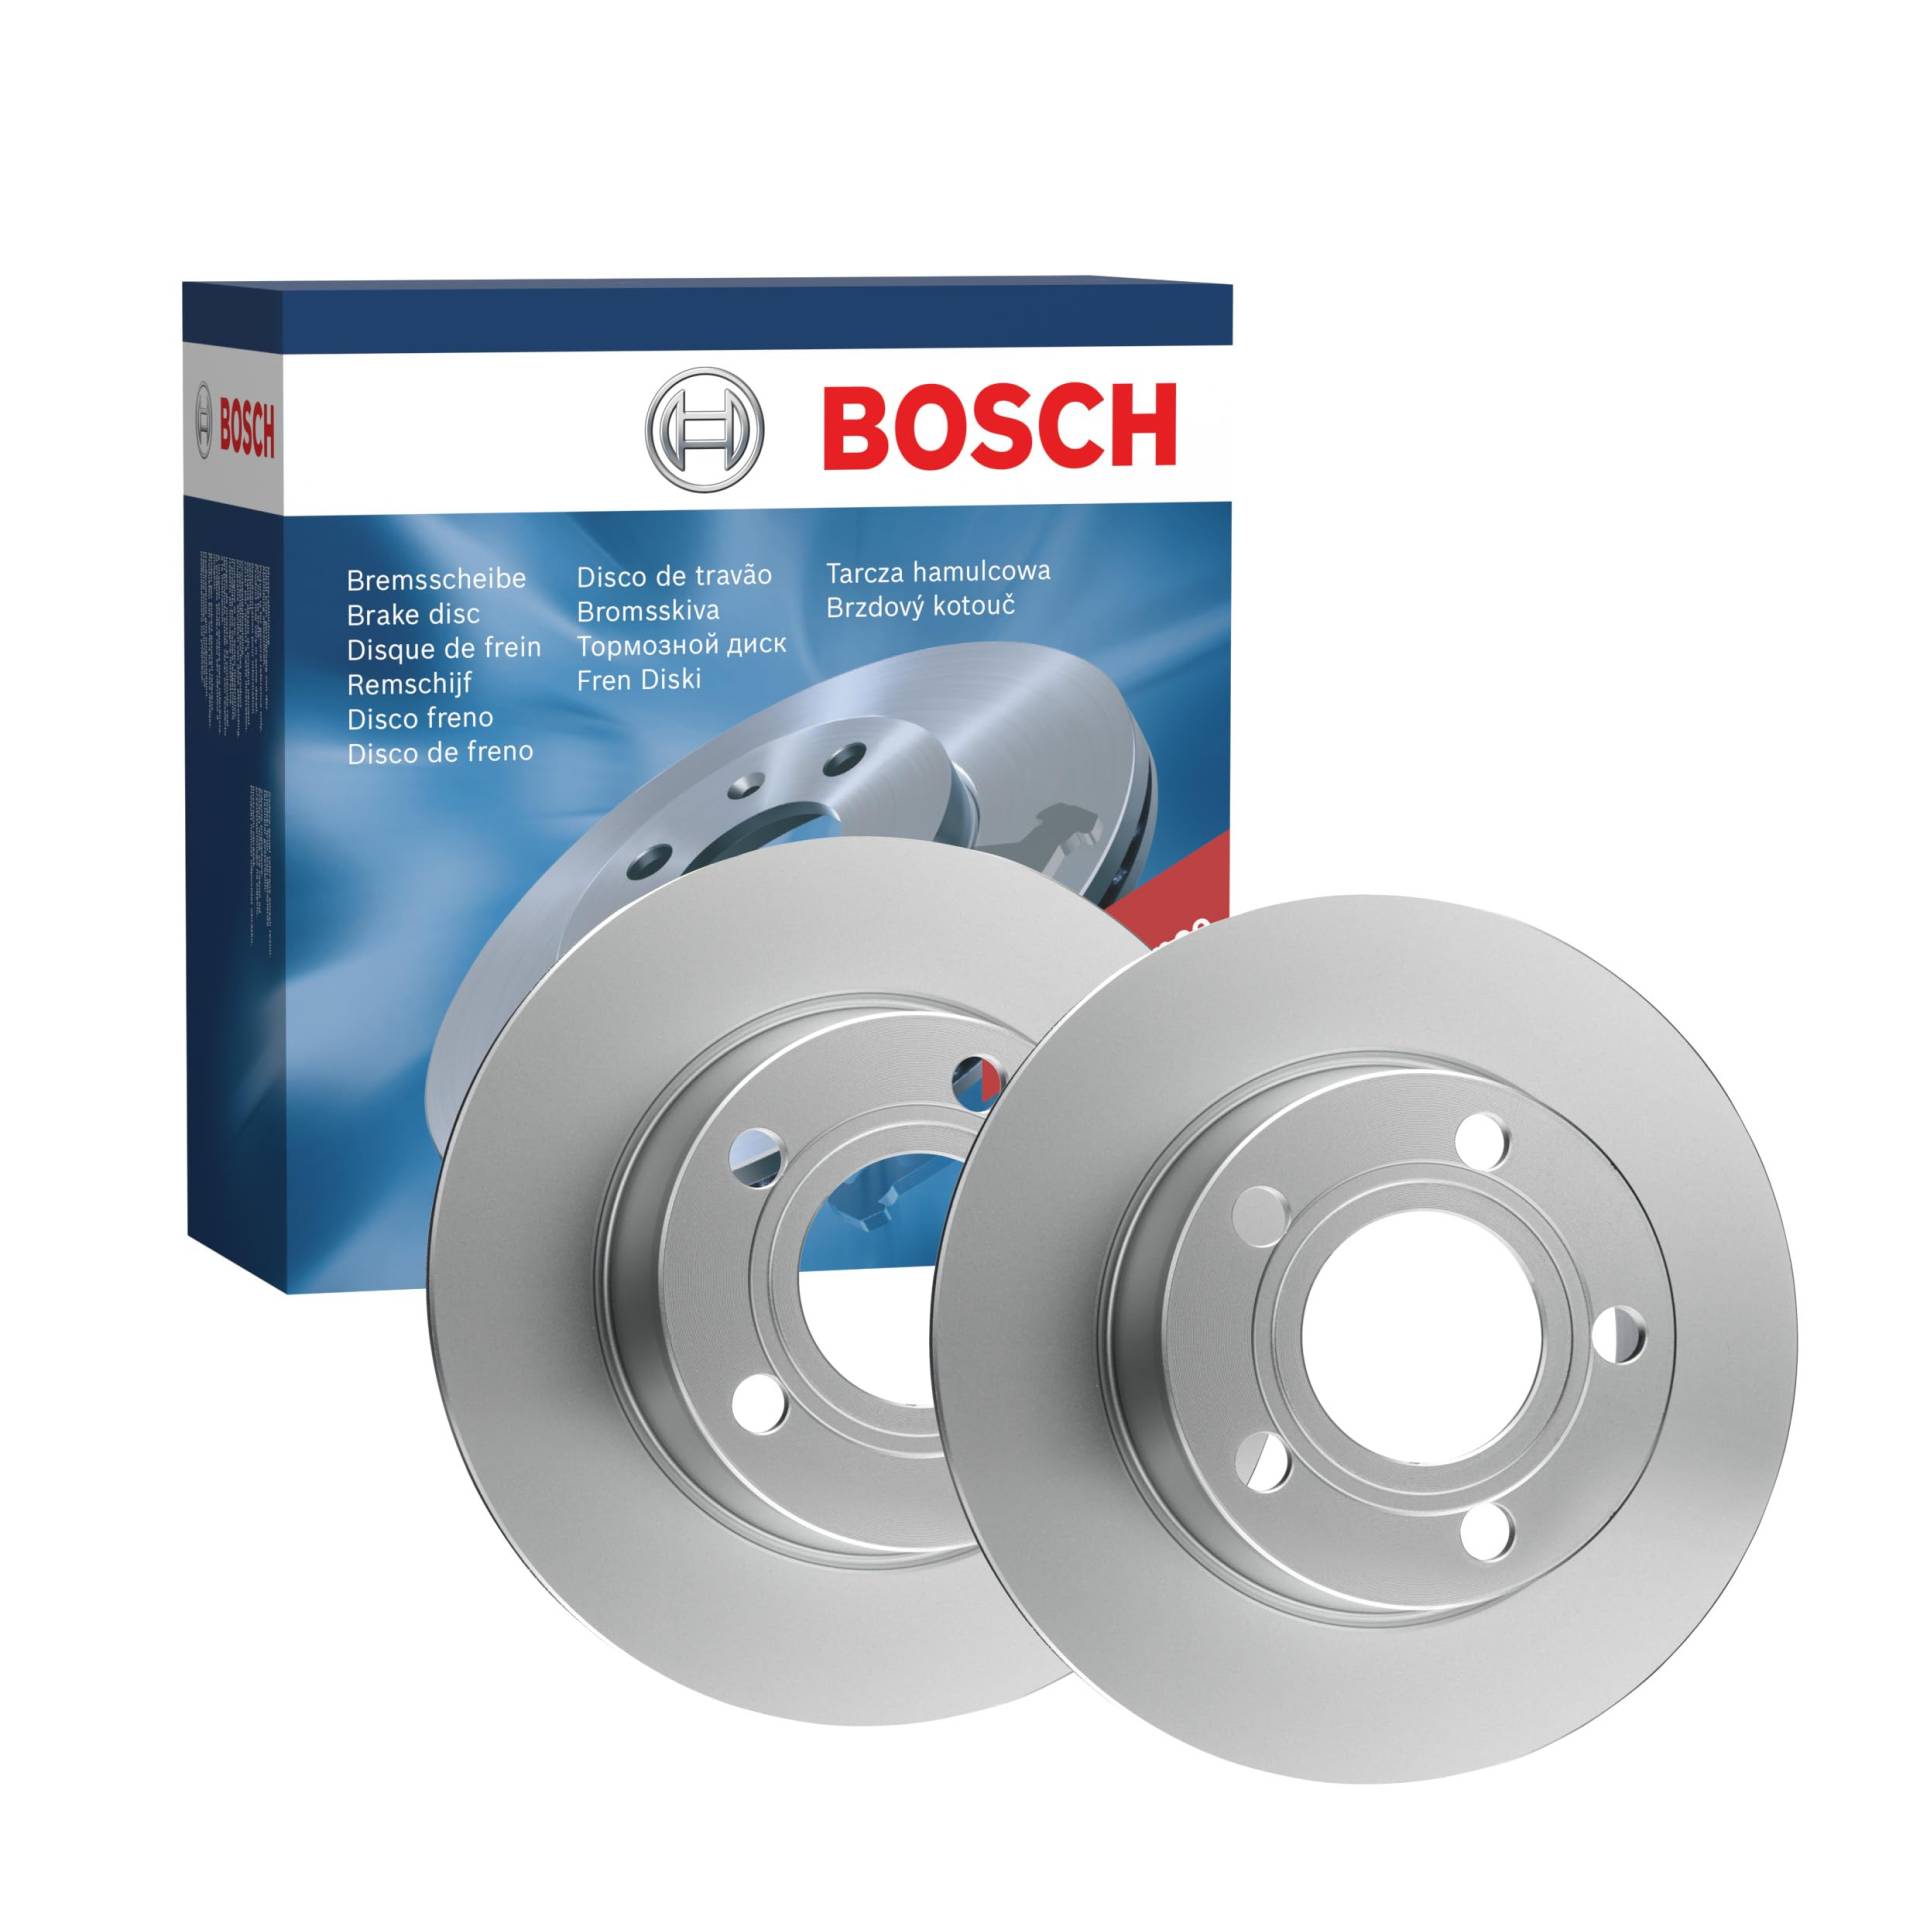 Bosch BD618 Bremsscheiben - ECE-R90 Zertifizierung - zwei Bremsscheiben pro Set von Bosch Automotive